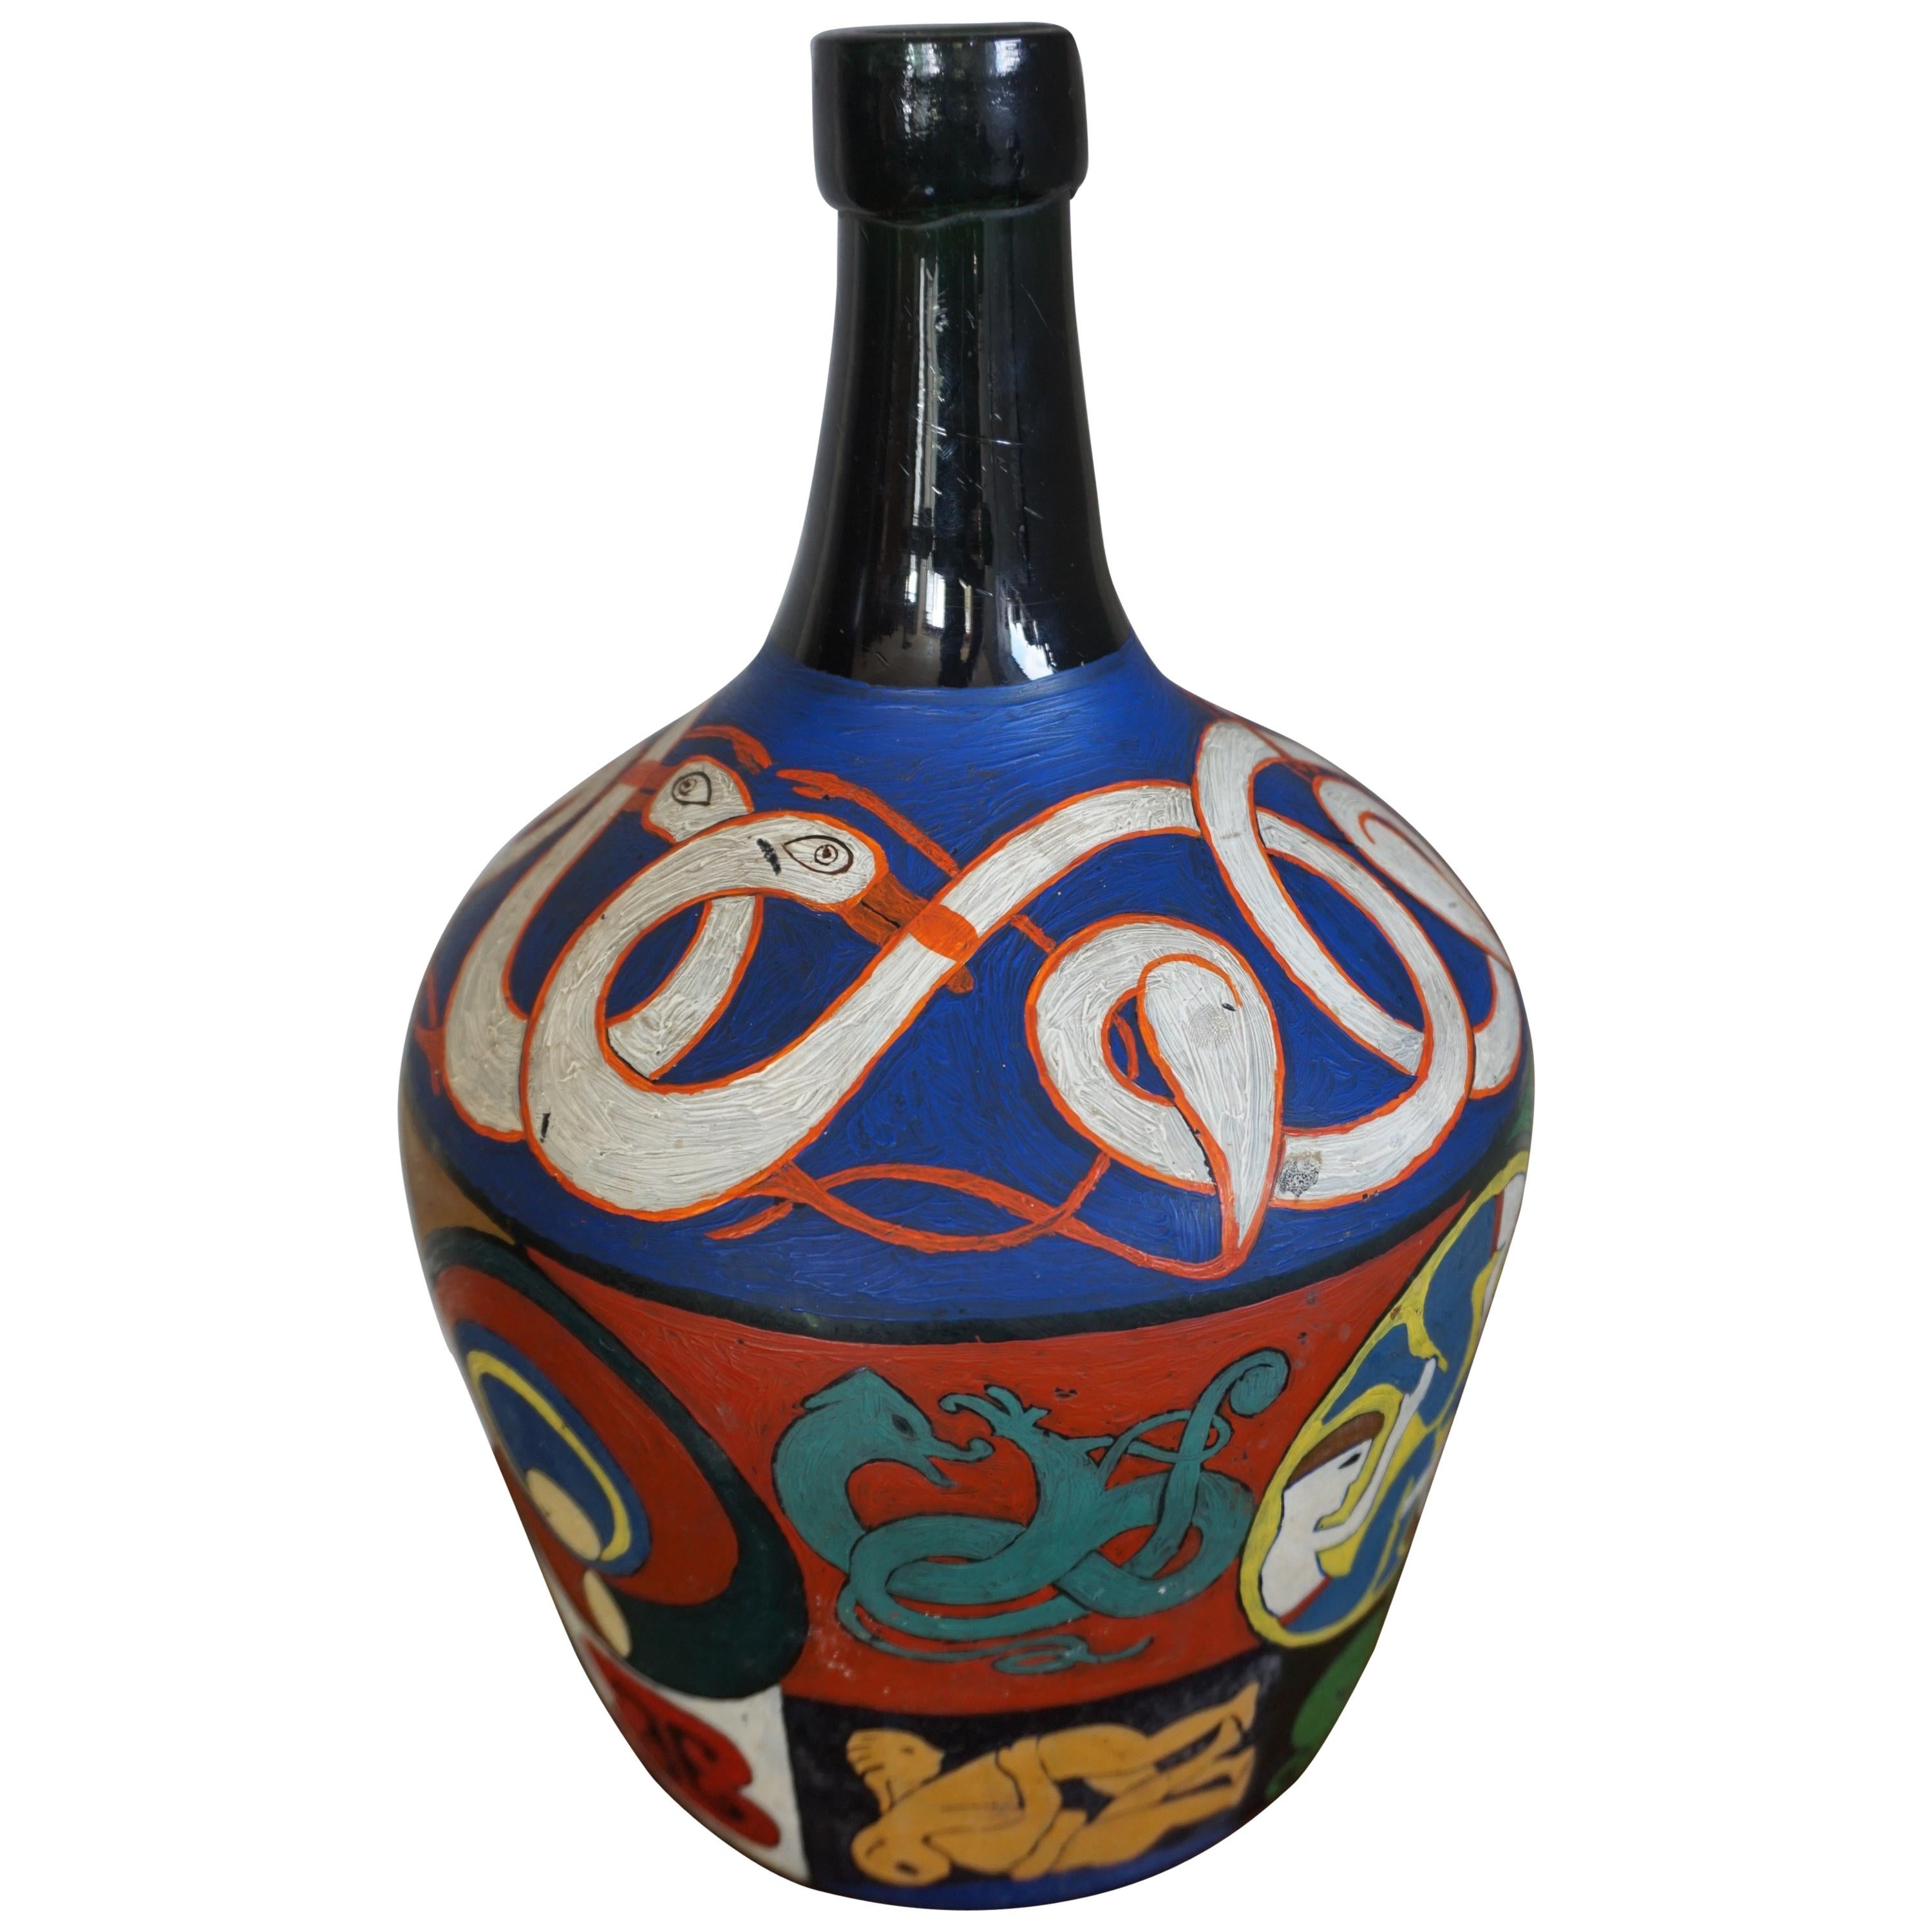 Dekorative und künstlerische handbemalte Flaschen-Volkskunst mit bunter Symbolik